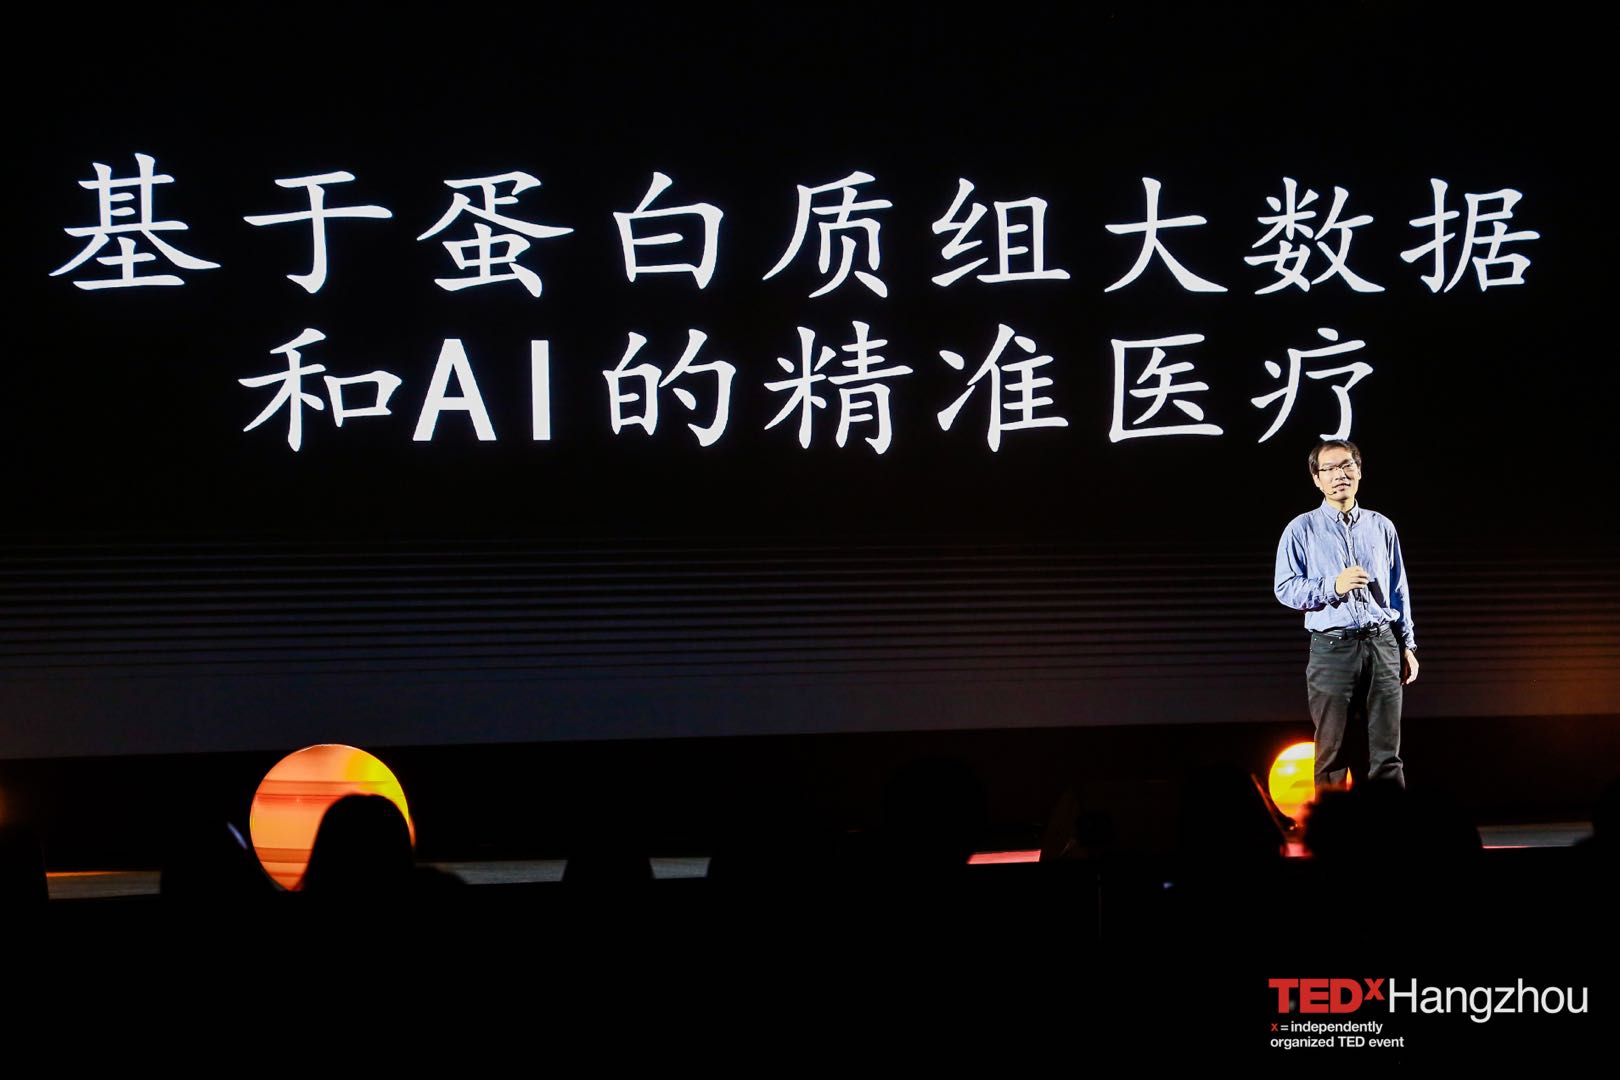 20201025. TEDx Hangzhou